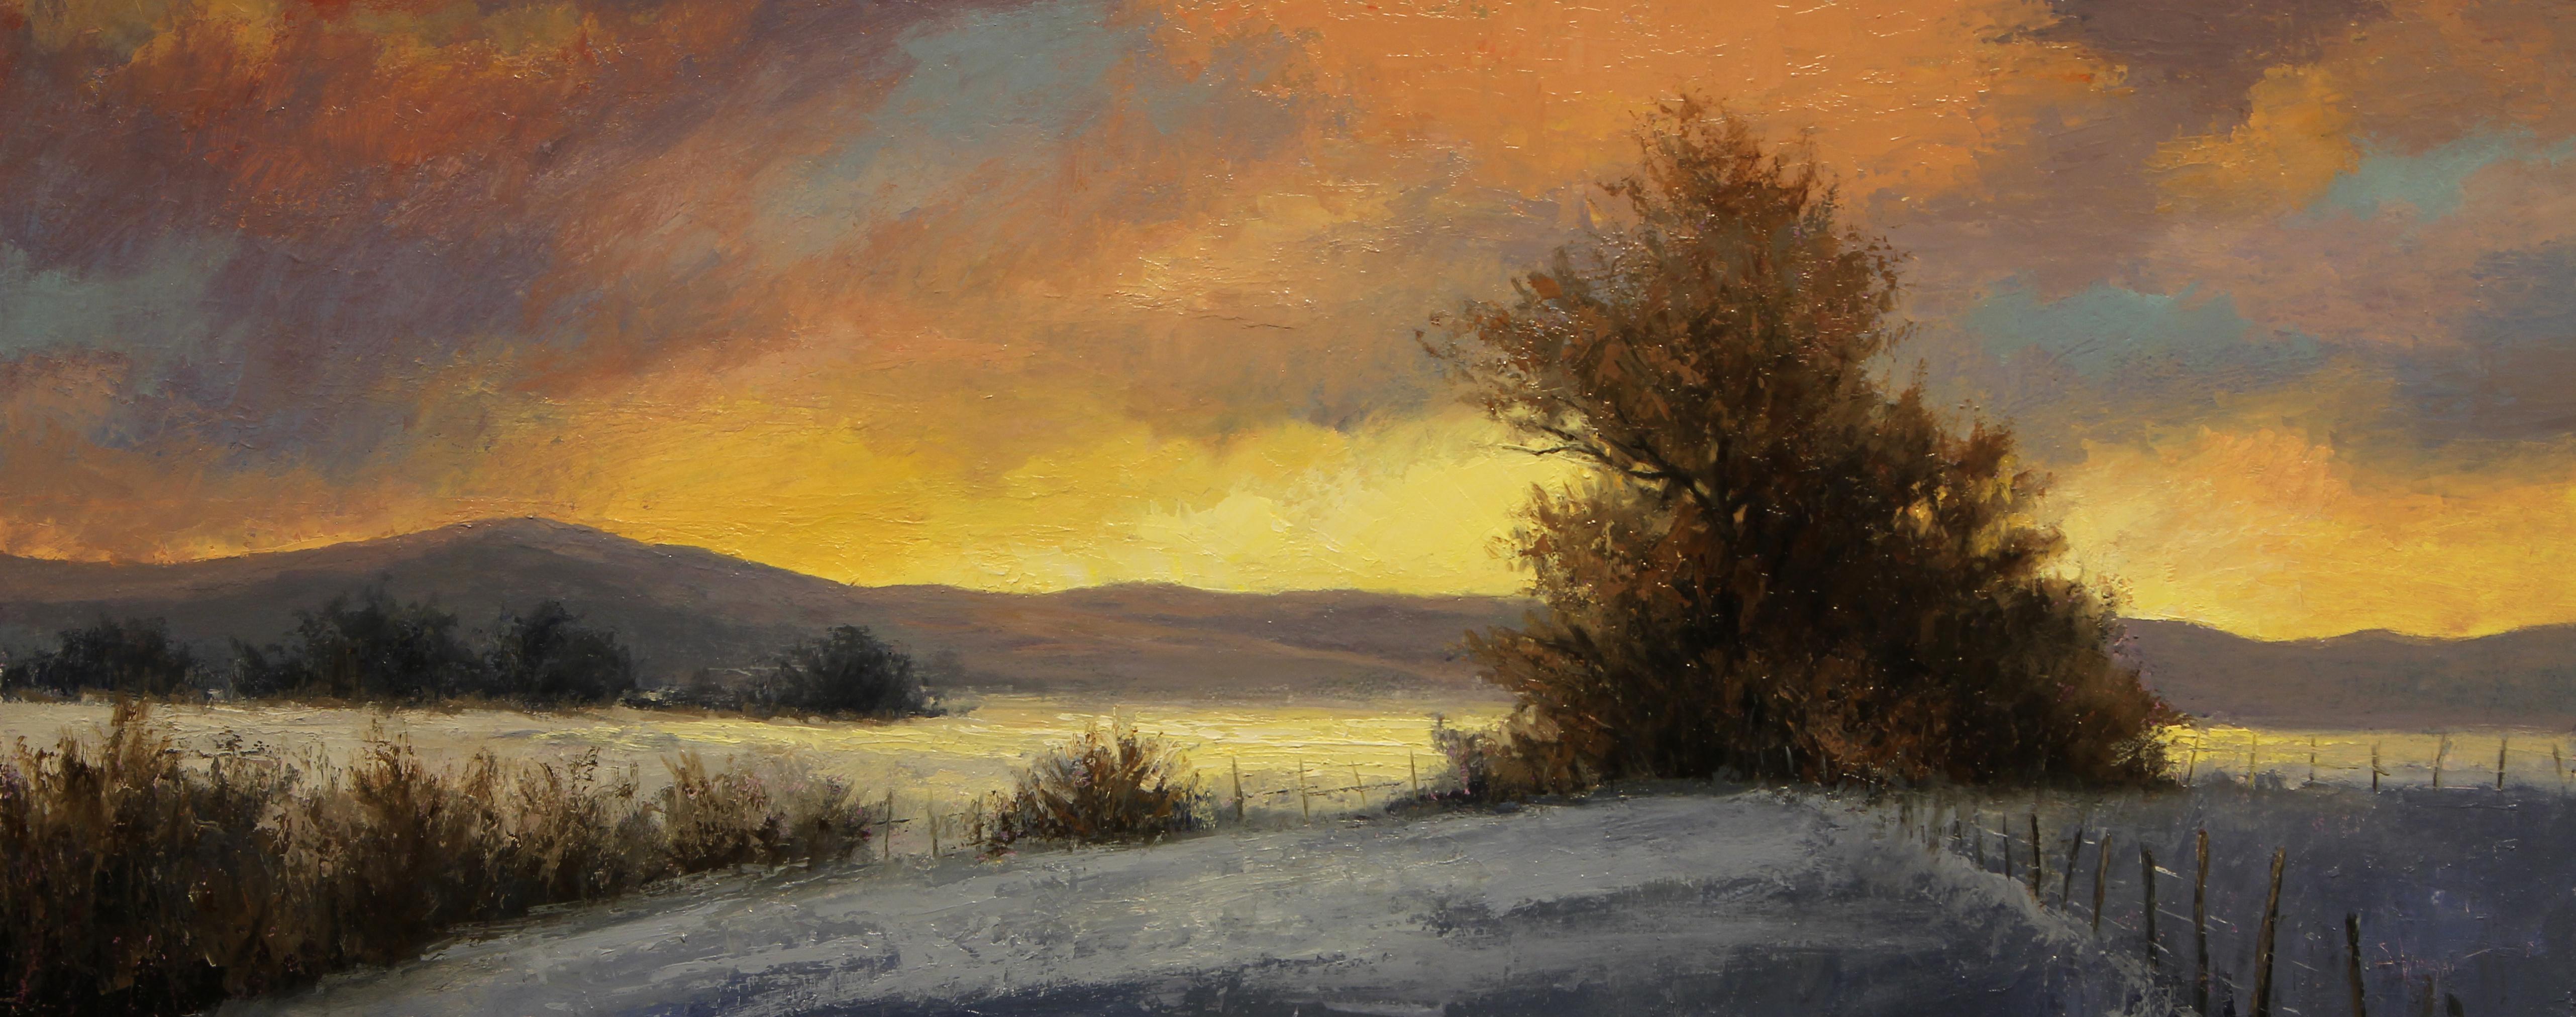 Simon Winegar Landscape Painting - Winter in Color (landscape, winter, snow, dusk)